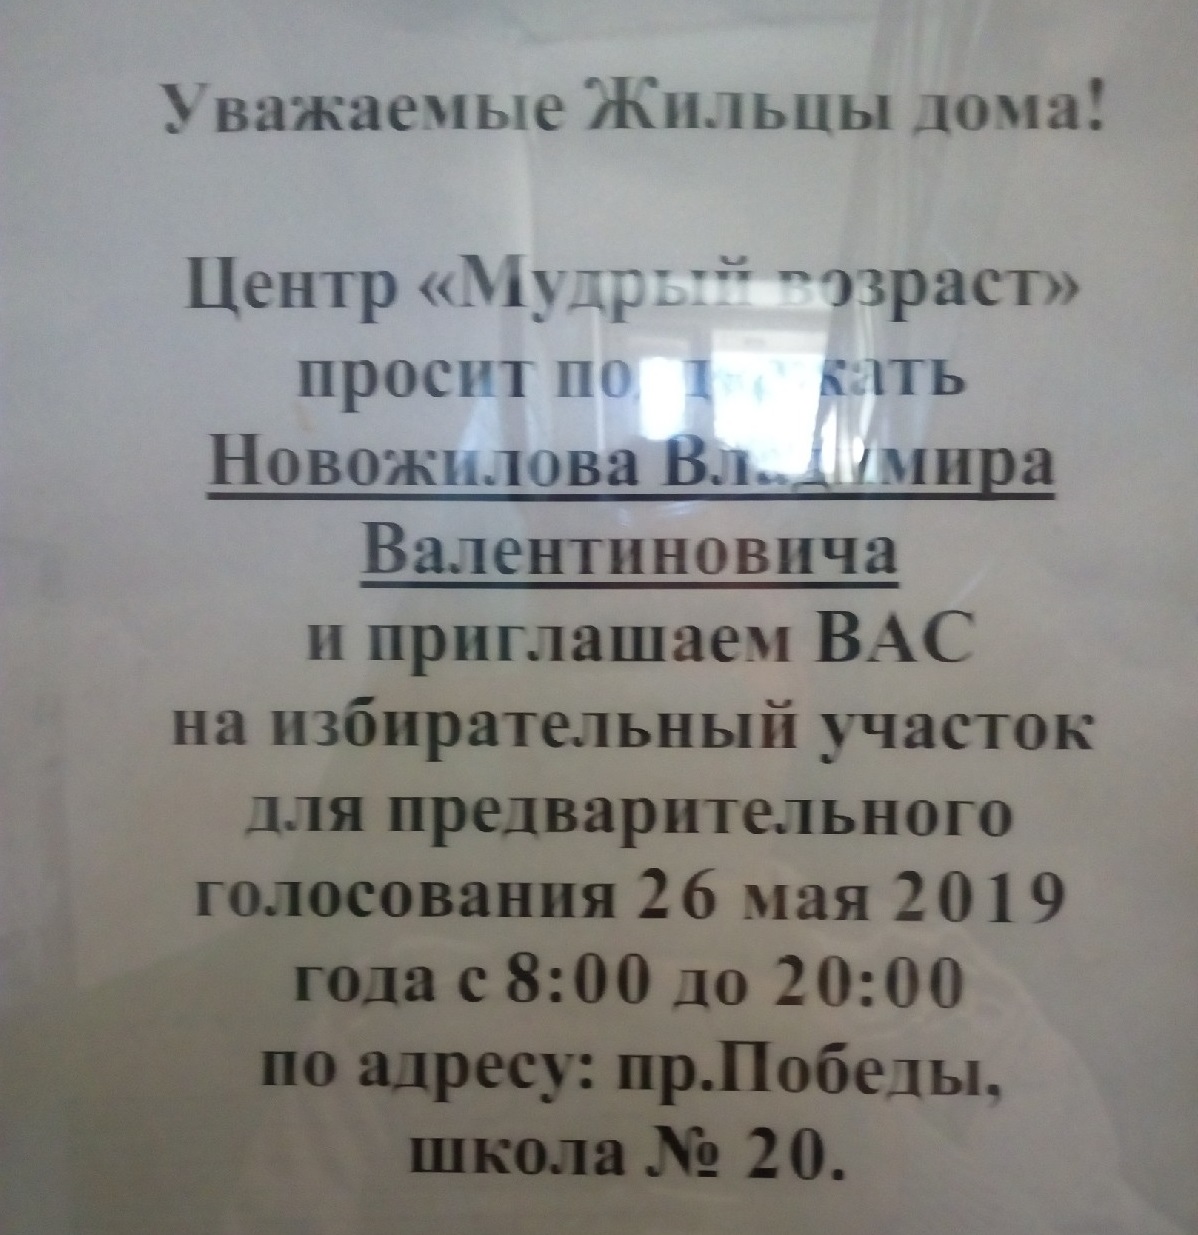 Пирожки по пять рублей и бесплатная рассада: как вологжан пытаются завлечь на праймериз "Единой России"